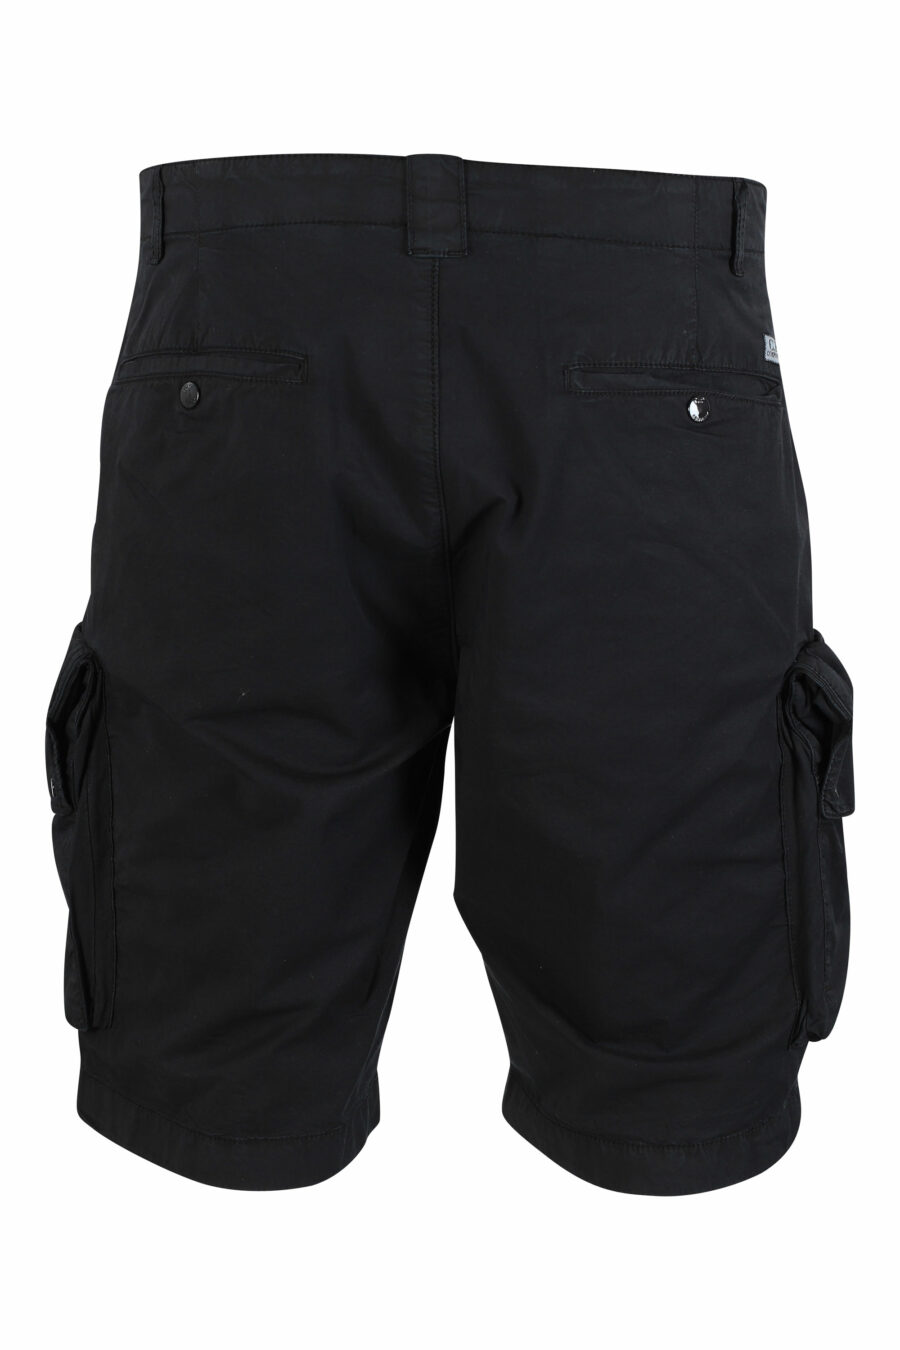 Short noir avec poches latérales et mini logo circulaire - IMG 9487